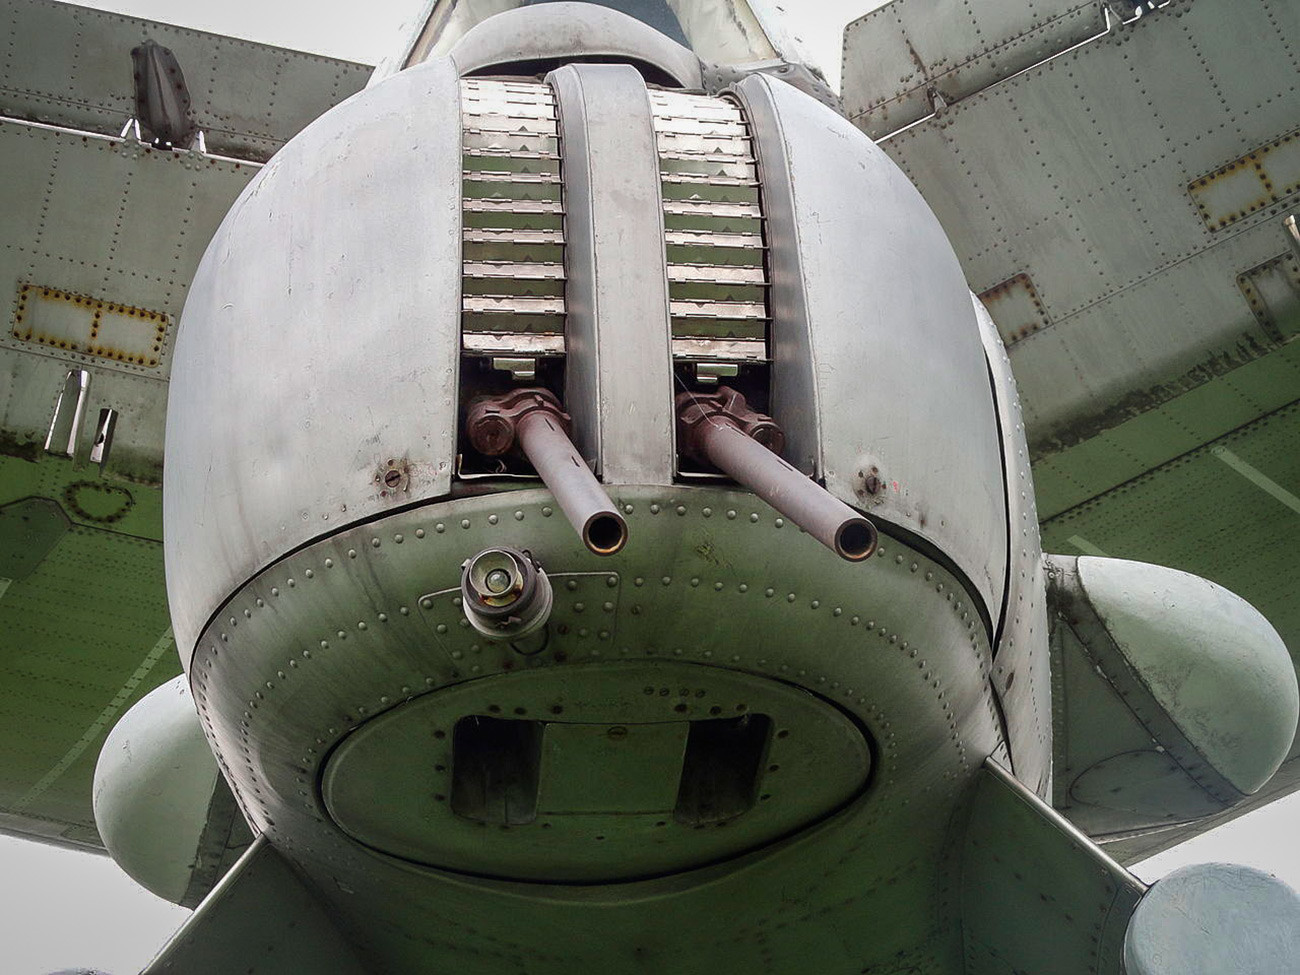 Cañones AM-23 instalados en el Tu-142